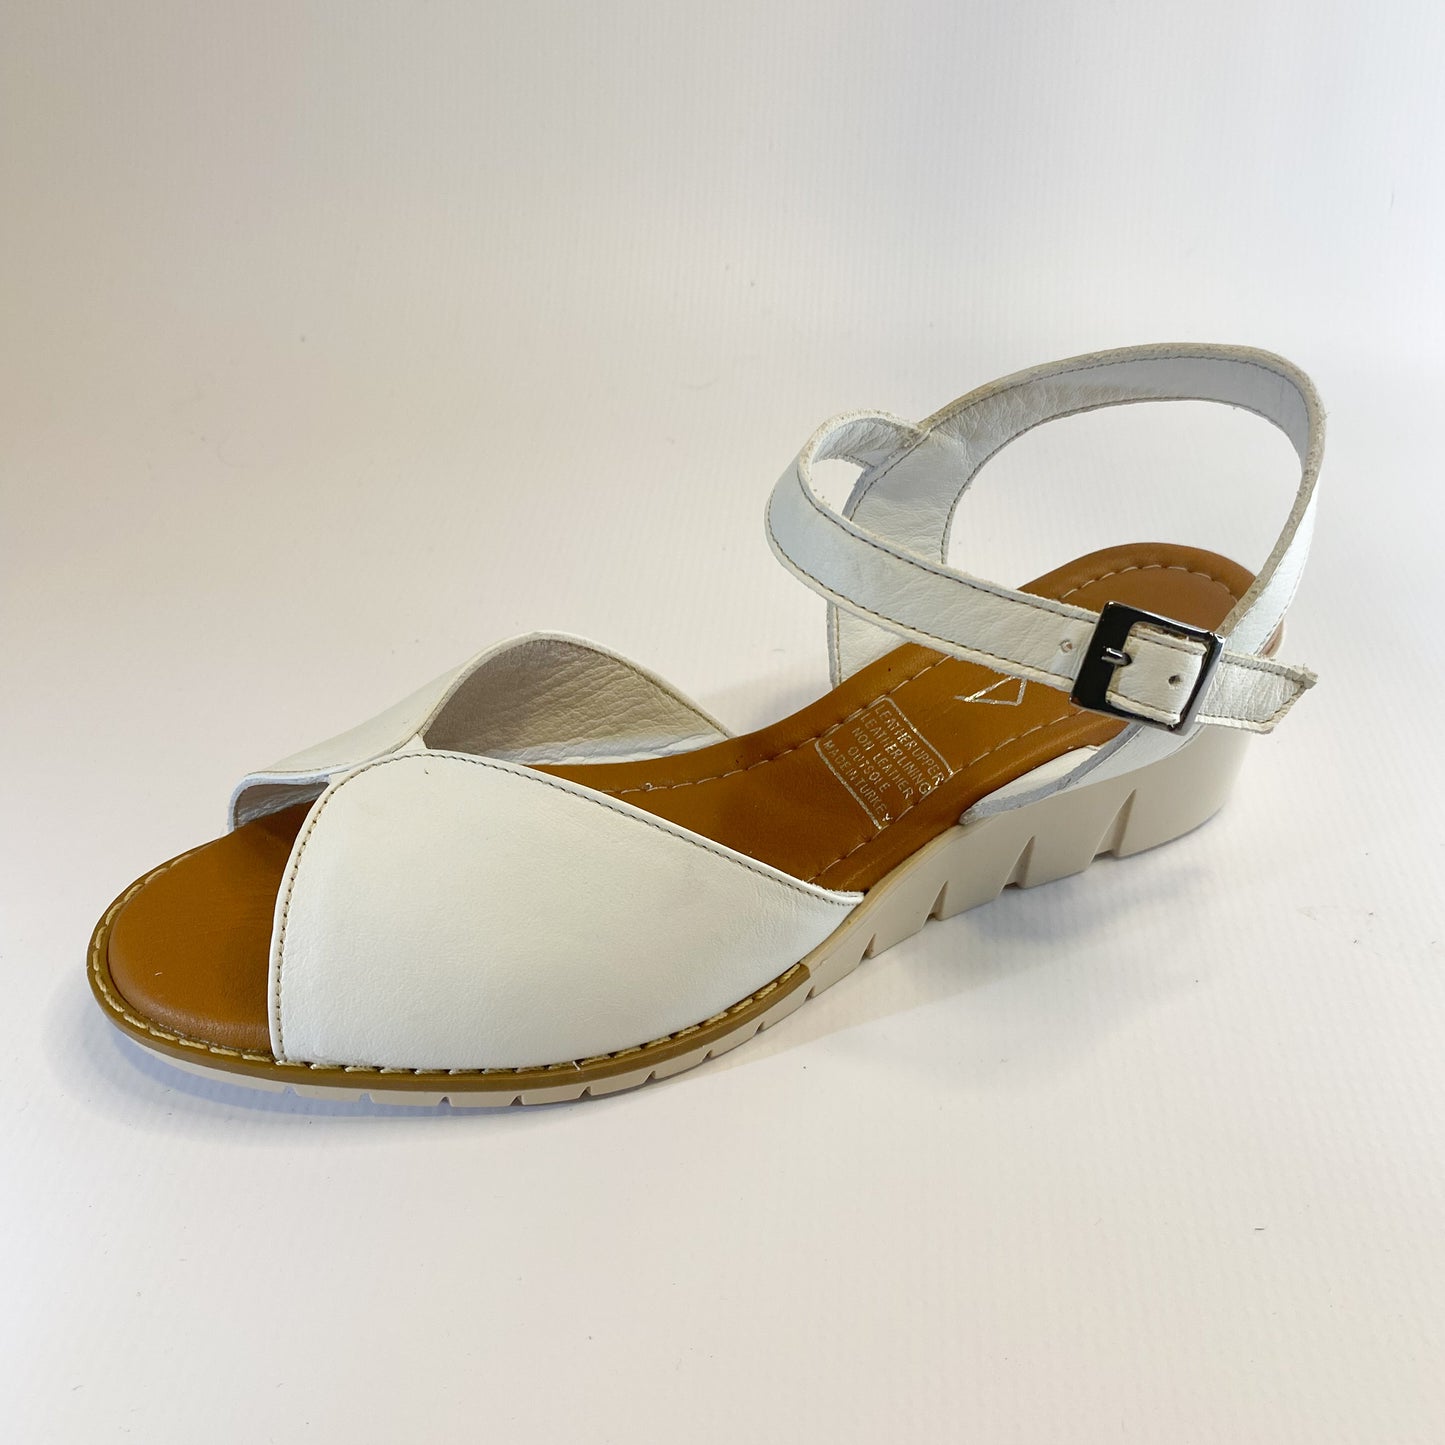 Gia white leather wedge sandal